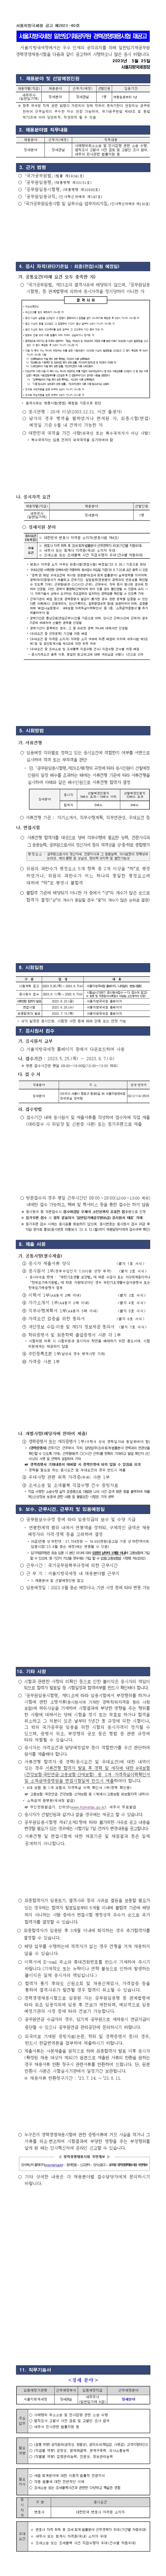 서울지방국세청 일반임기제공무원 경력경쟁채용시험 재공고